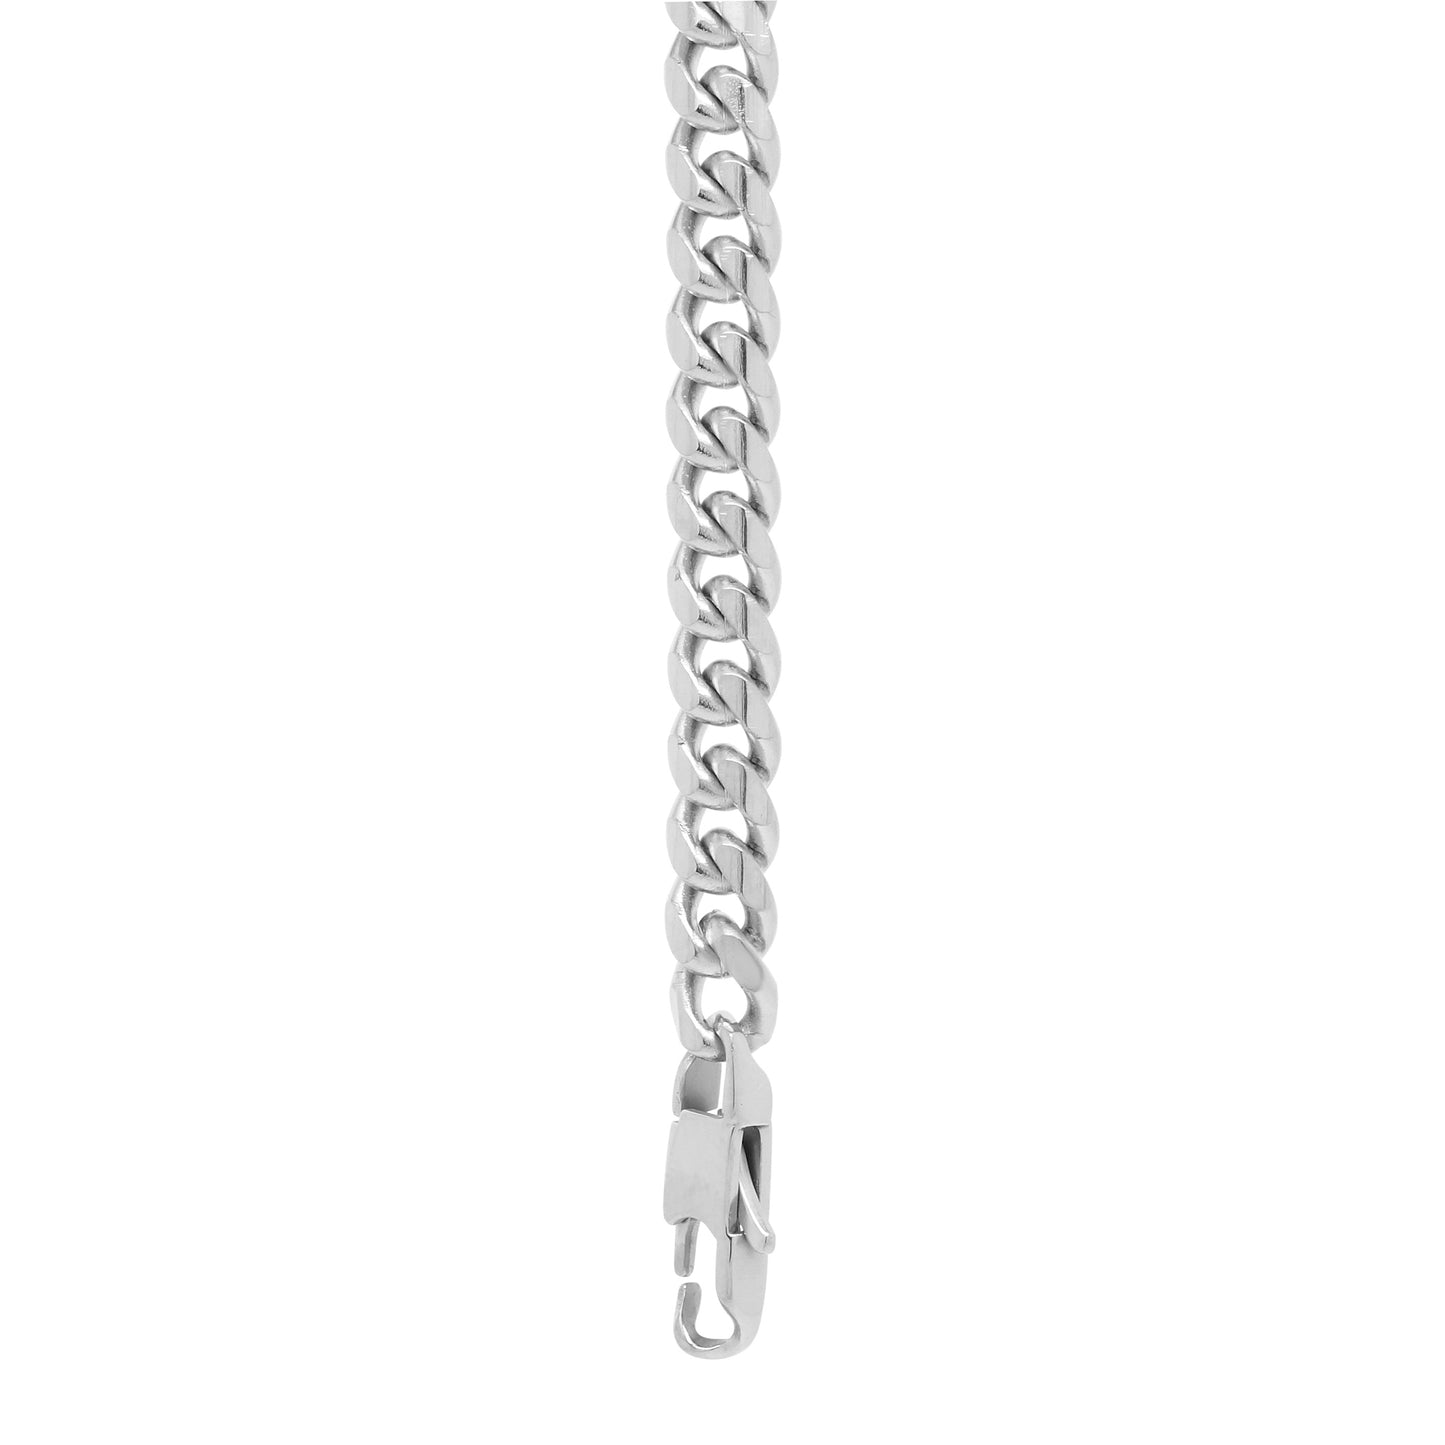 12 mm Chain Bracelet - Silver